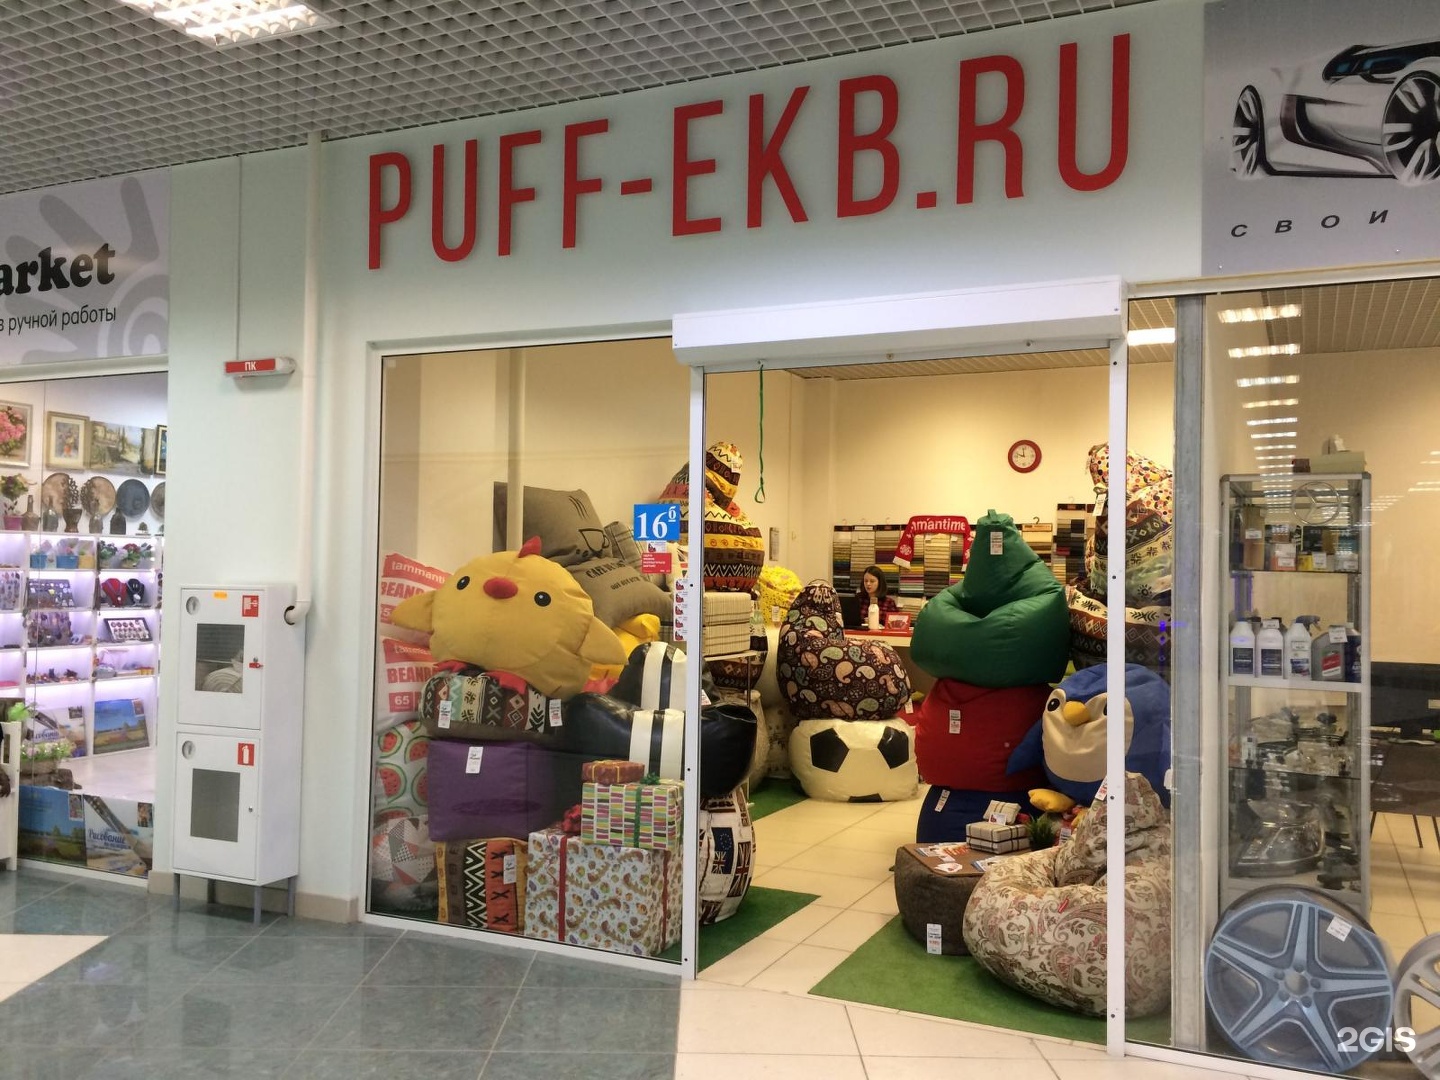 Интернет Магазин Екатеринбург